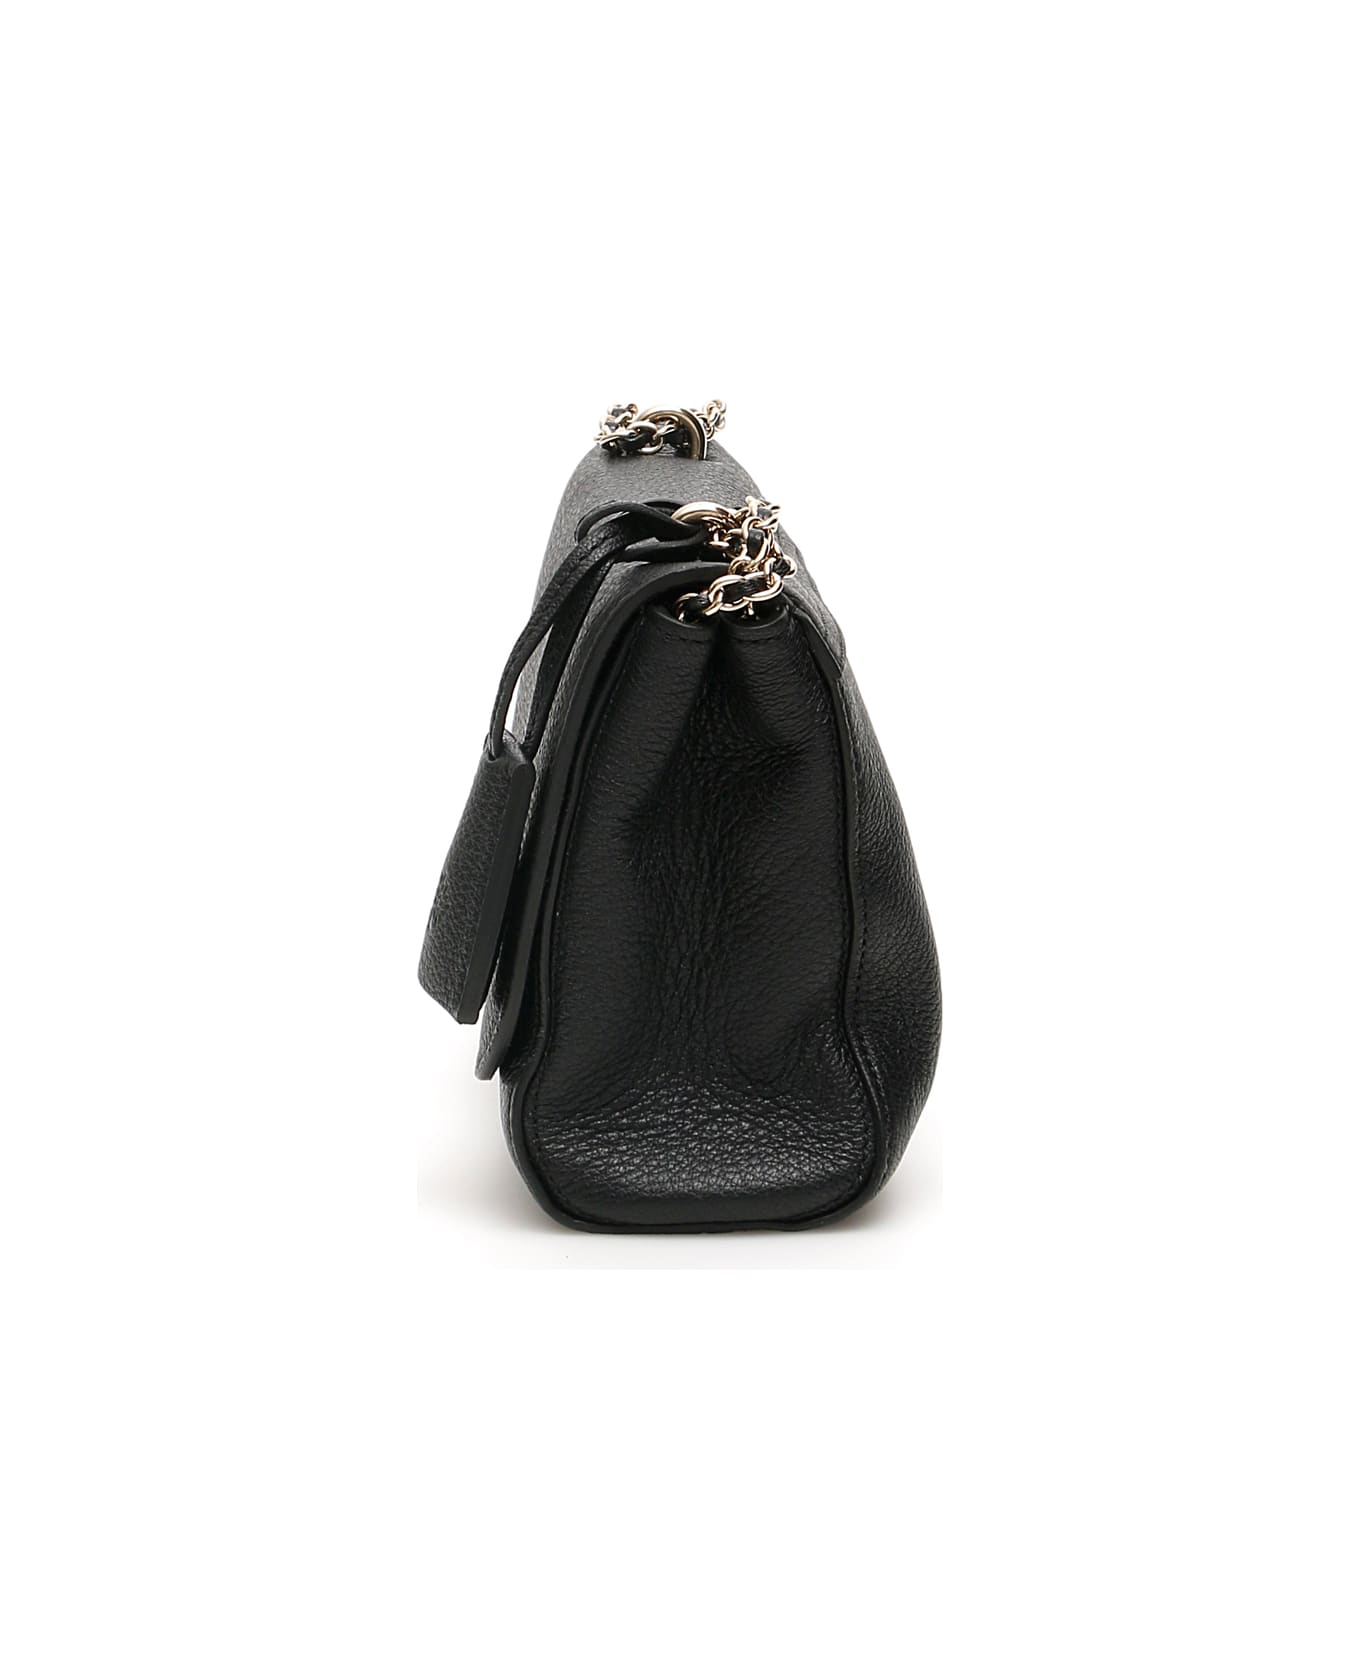 Mulberry 'lily' Shoulder Bag - Black